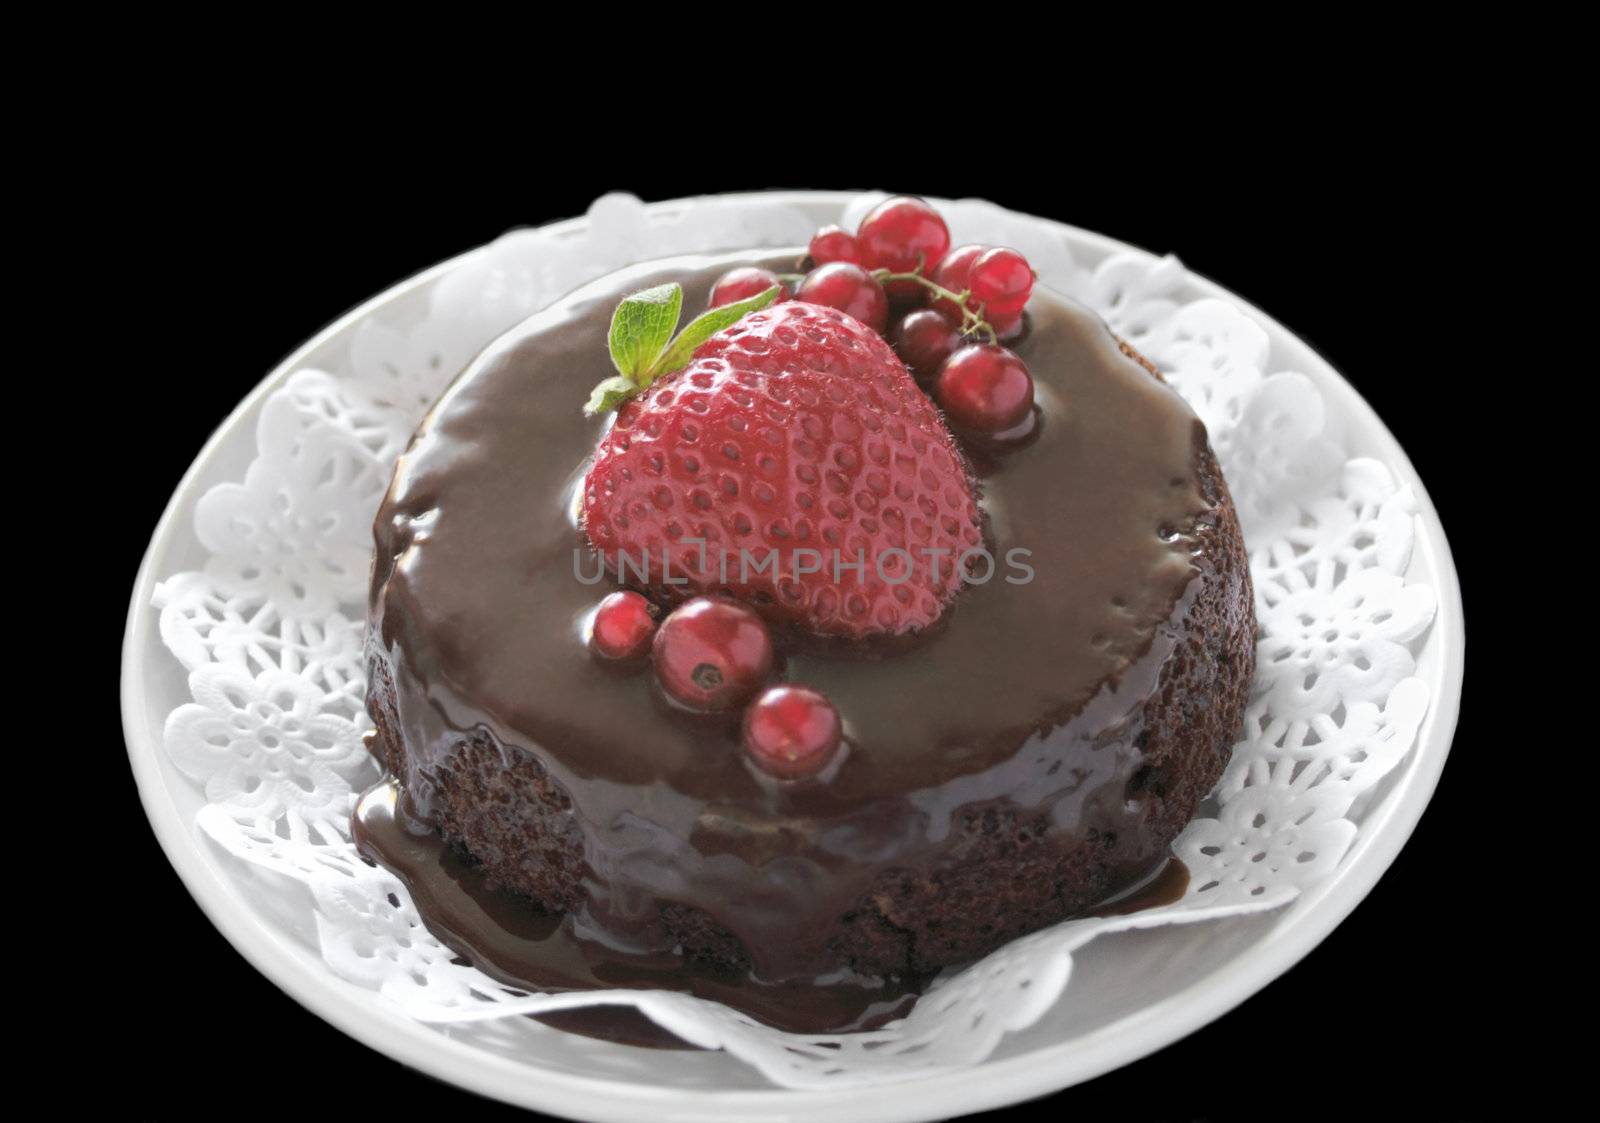 cake with ganache and berries by nebari